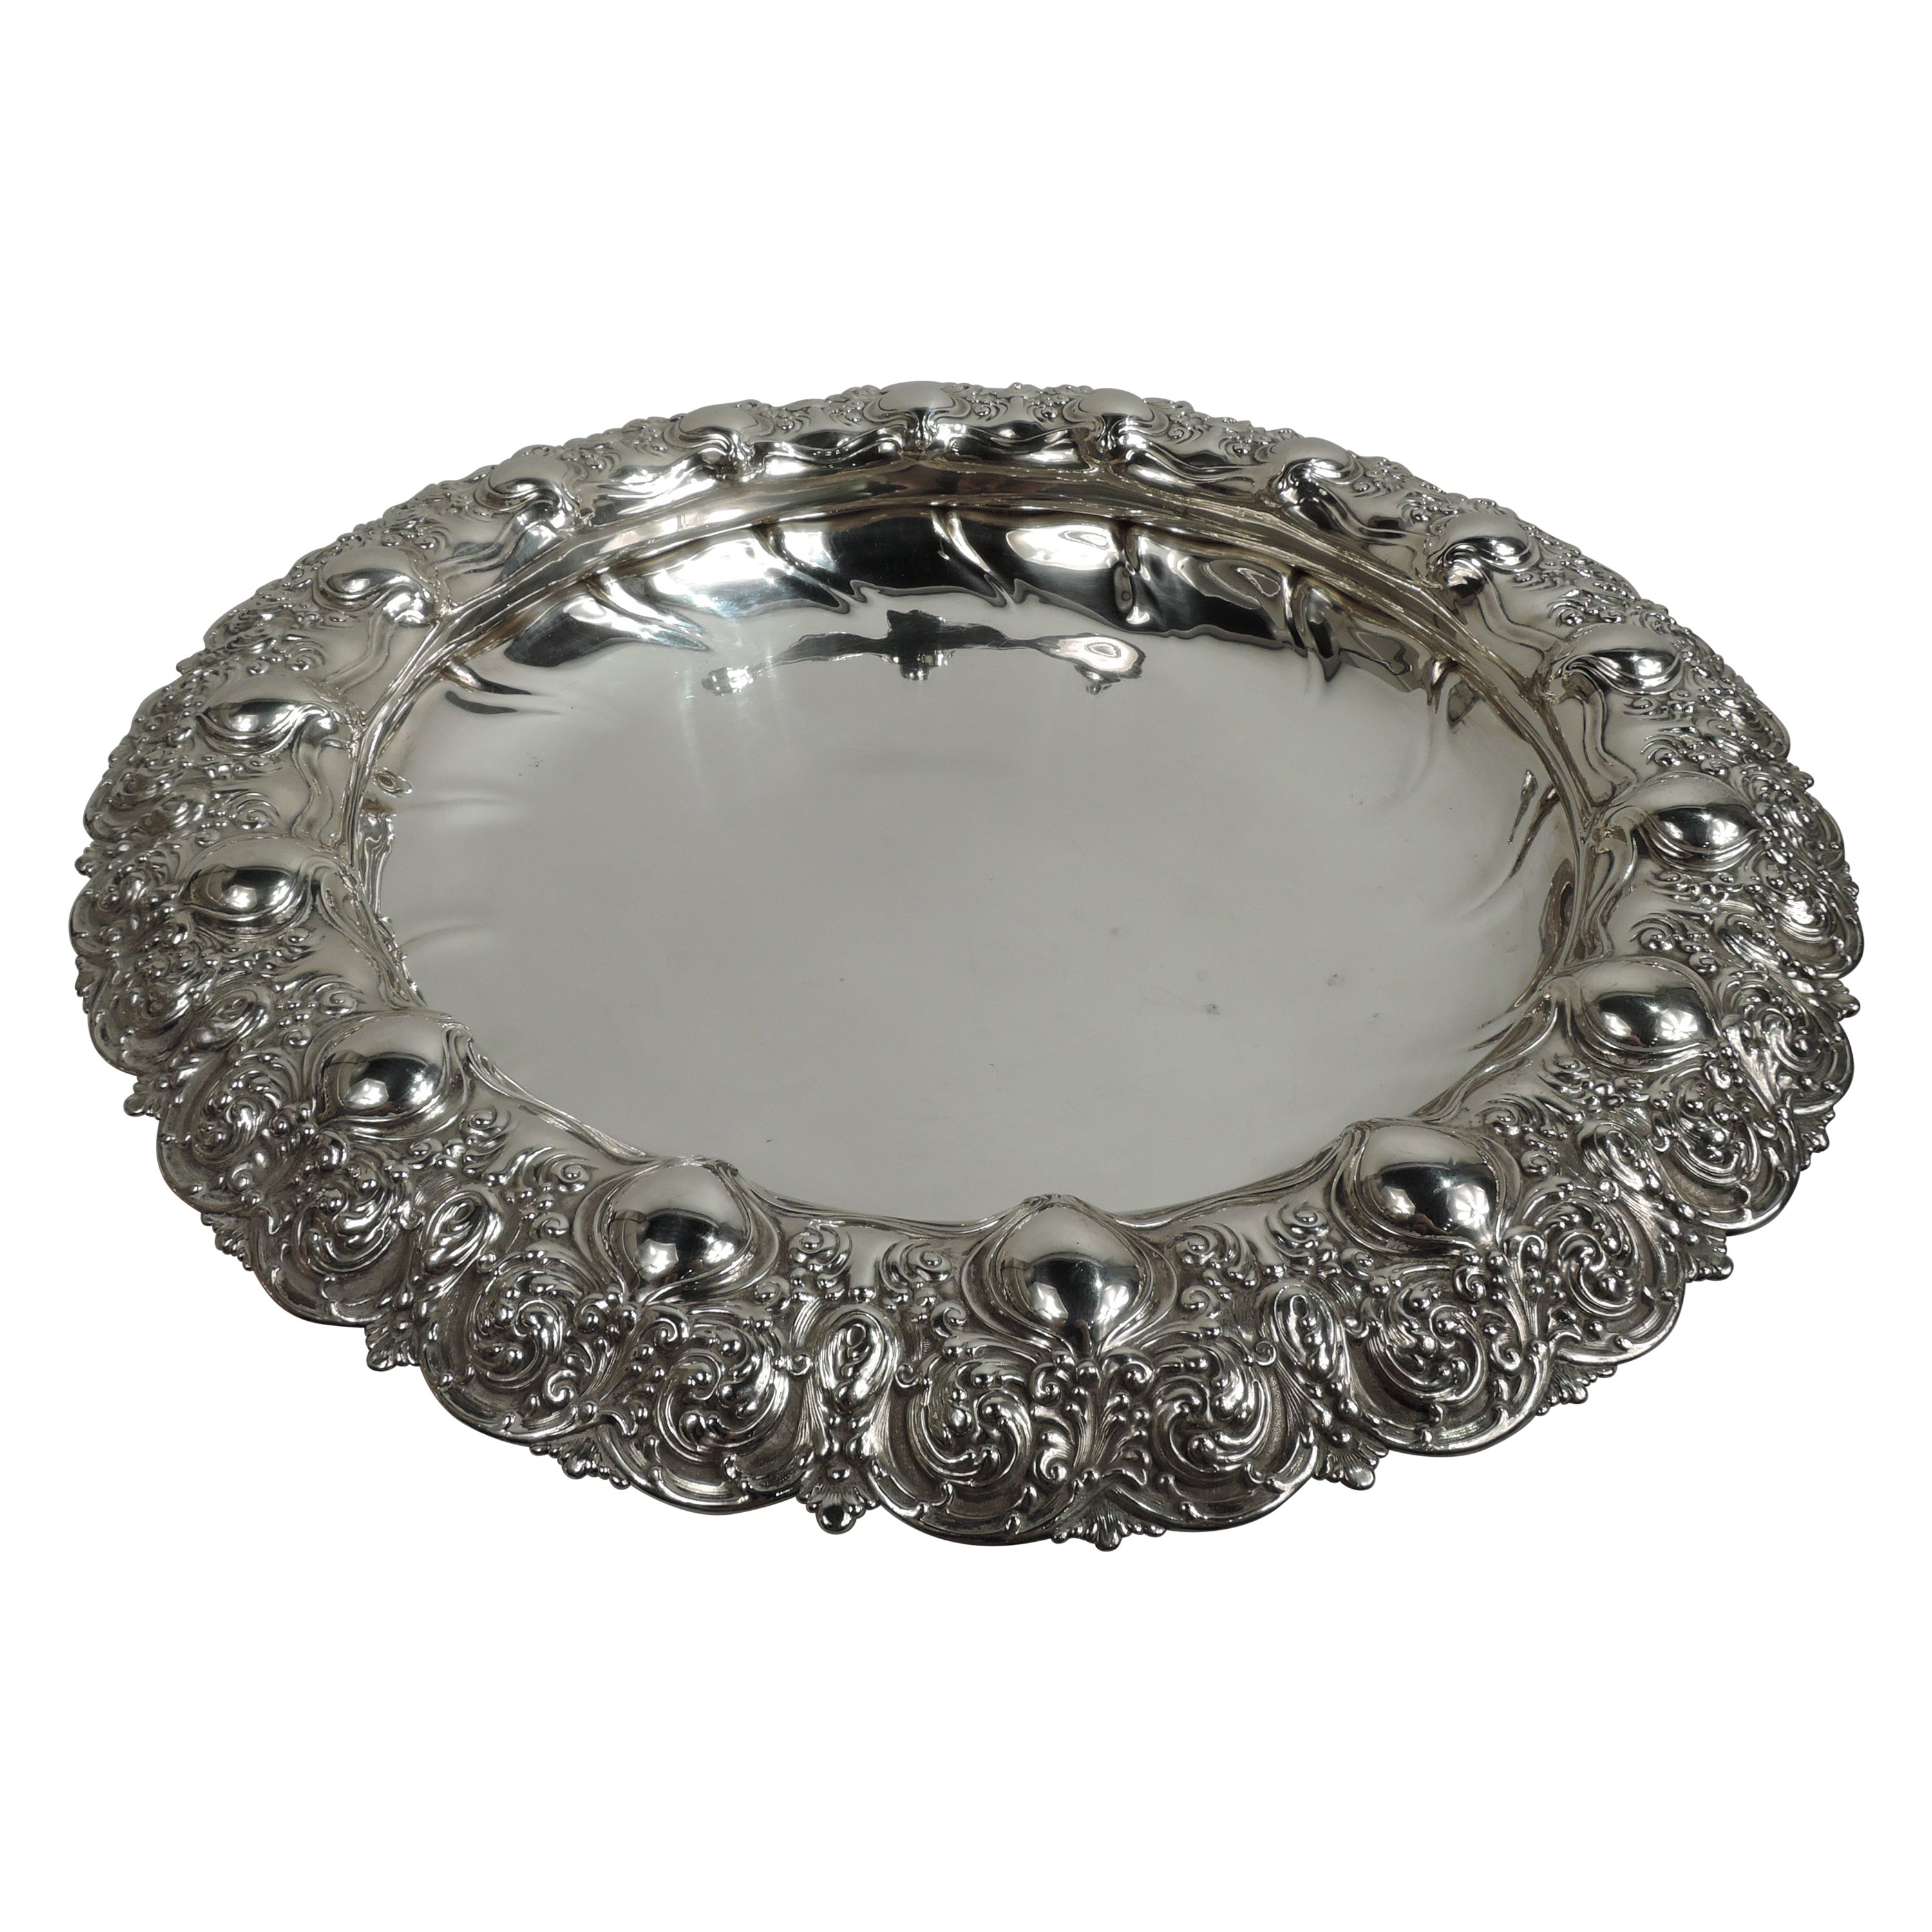 Antique Tiffany Art Nouveau Classical Sterling Silver Centerpiece Bowl